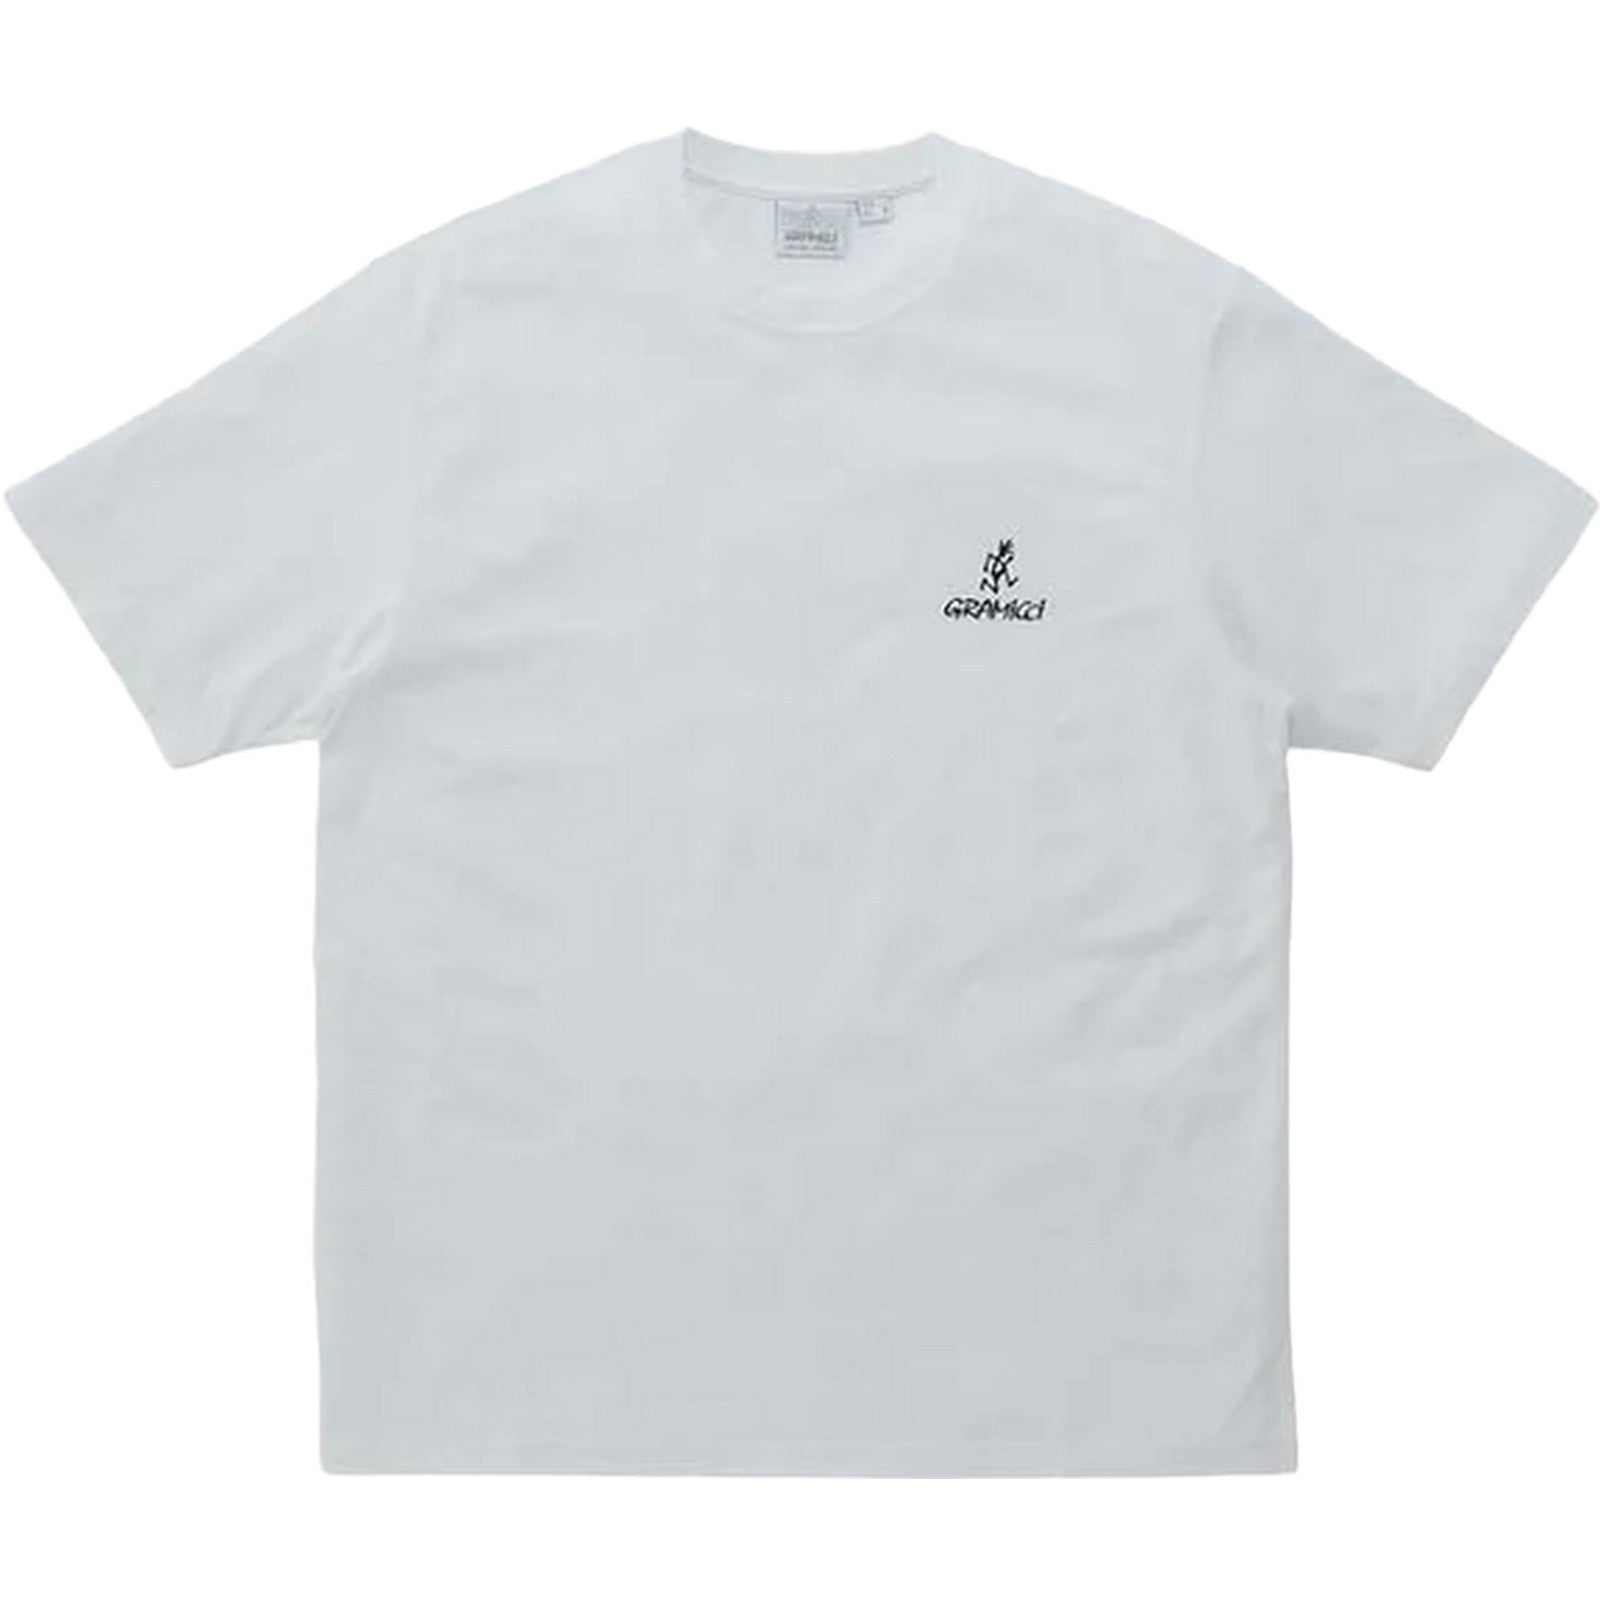 Gramicci T-shirt One Point Logo Tee